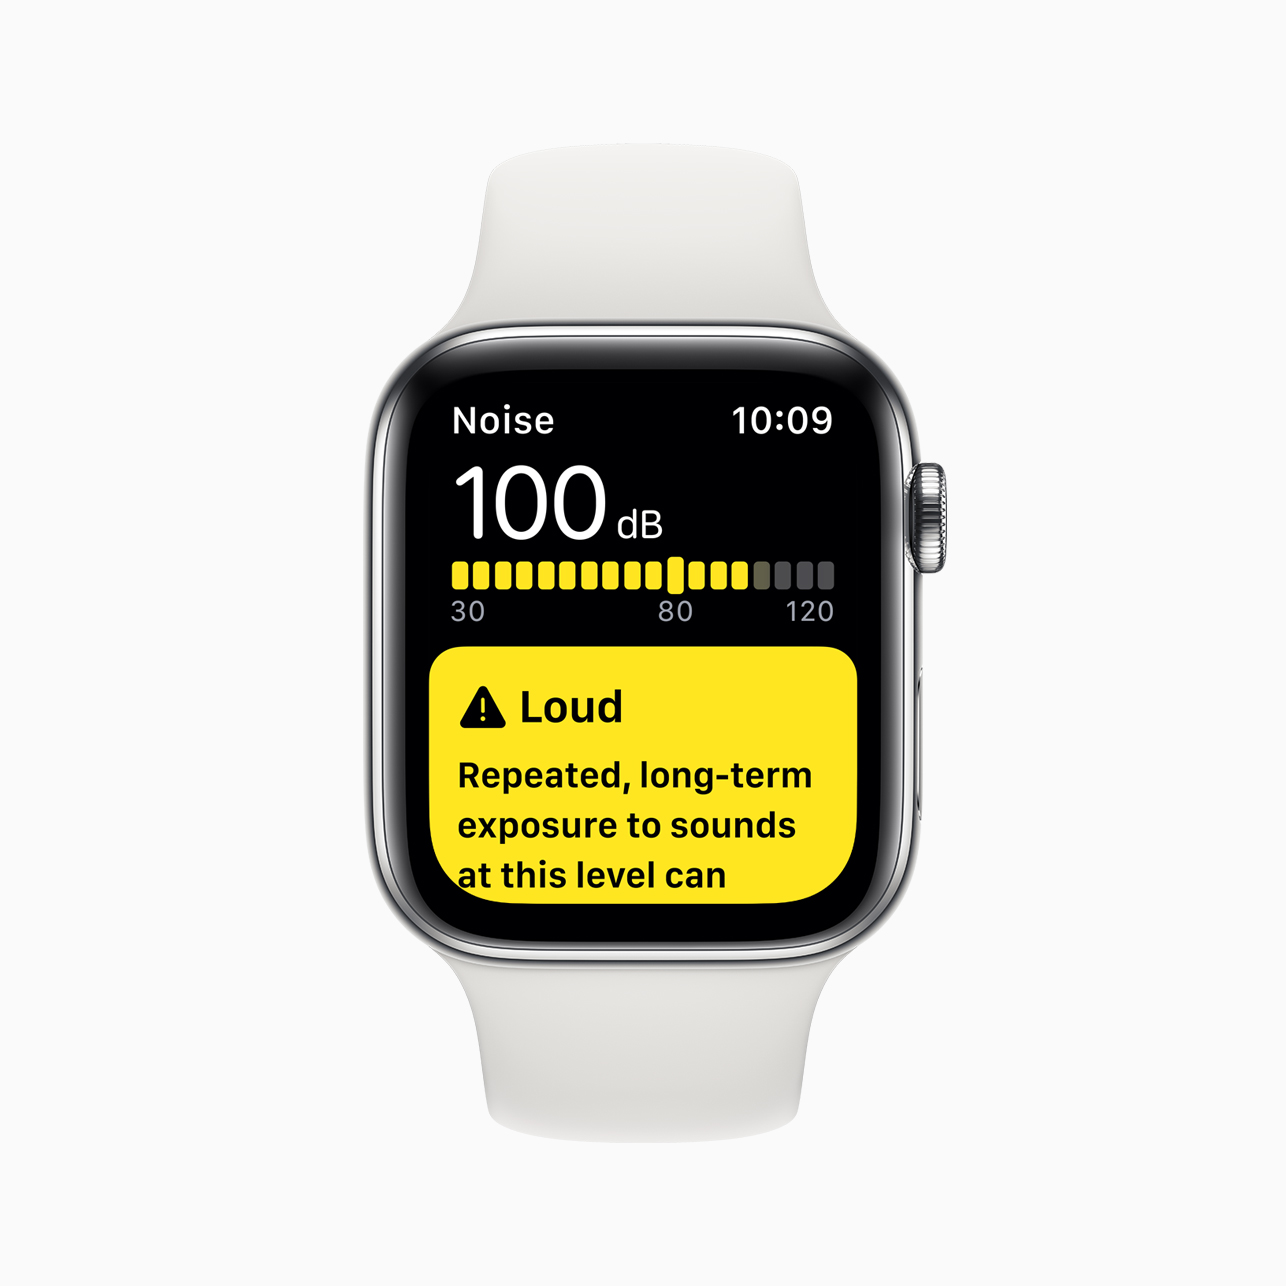 Apple Watch Series 5 anunciado con una nueva pantalla Retina siempre encendida con tasas de actualización variables y duración de la batería de 18 horas a partir de solo 399 $ US